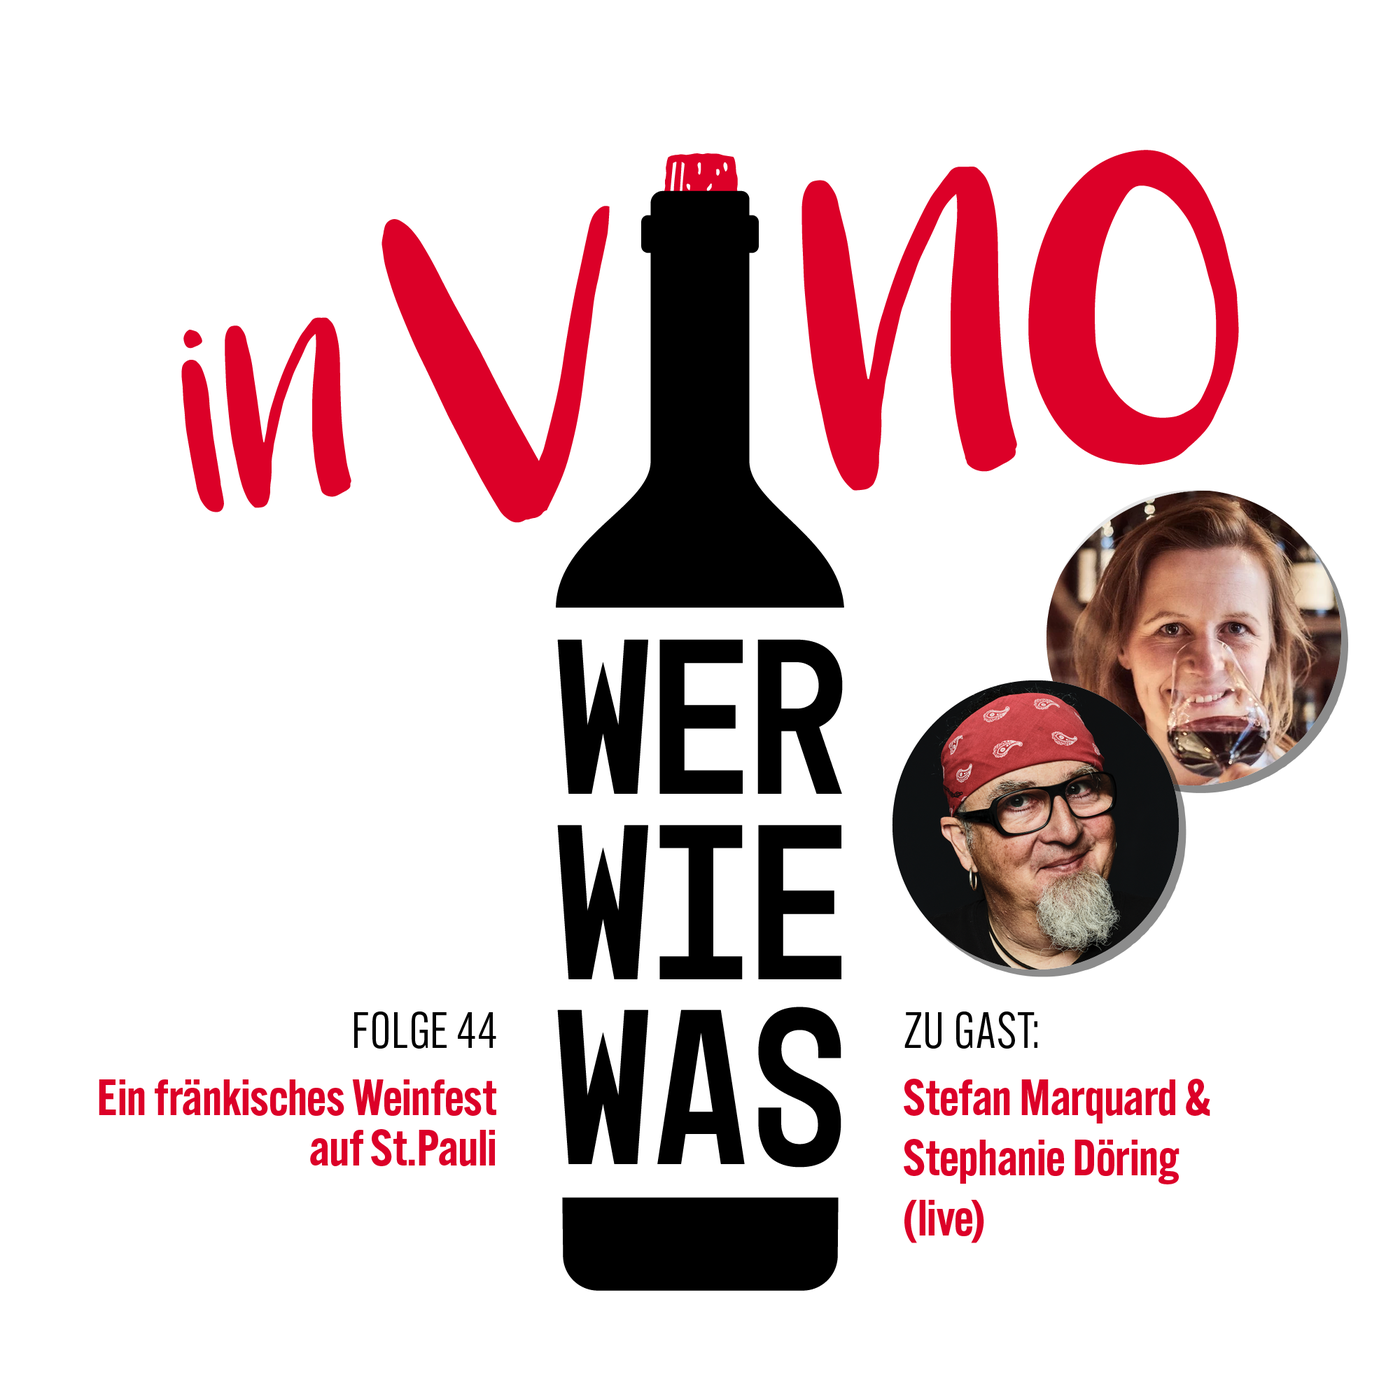 Stefan Marquard und Stephanie Döring (live): Ein fränkisches Weinfest auf St. Pauli